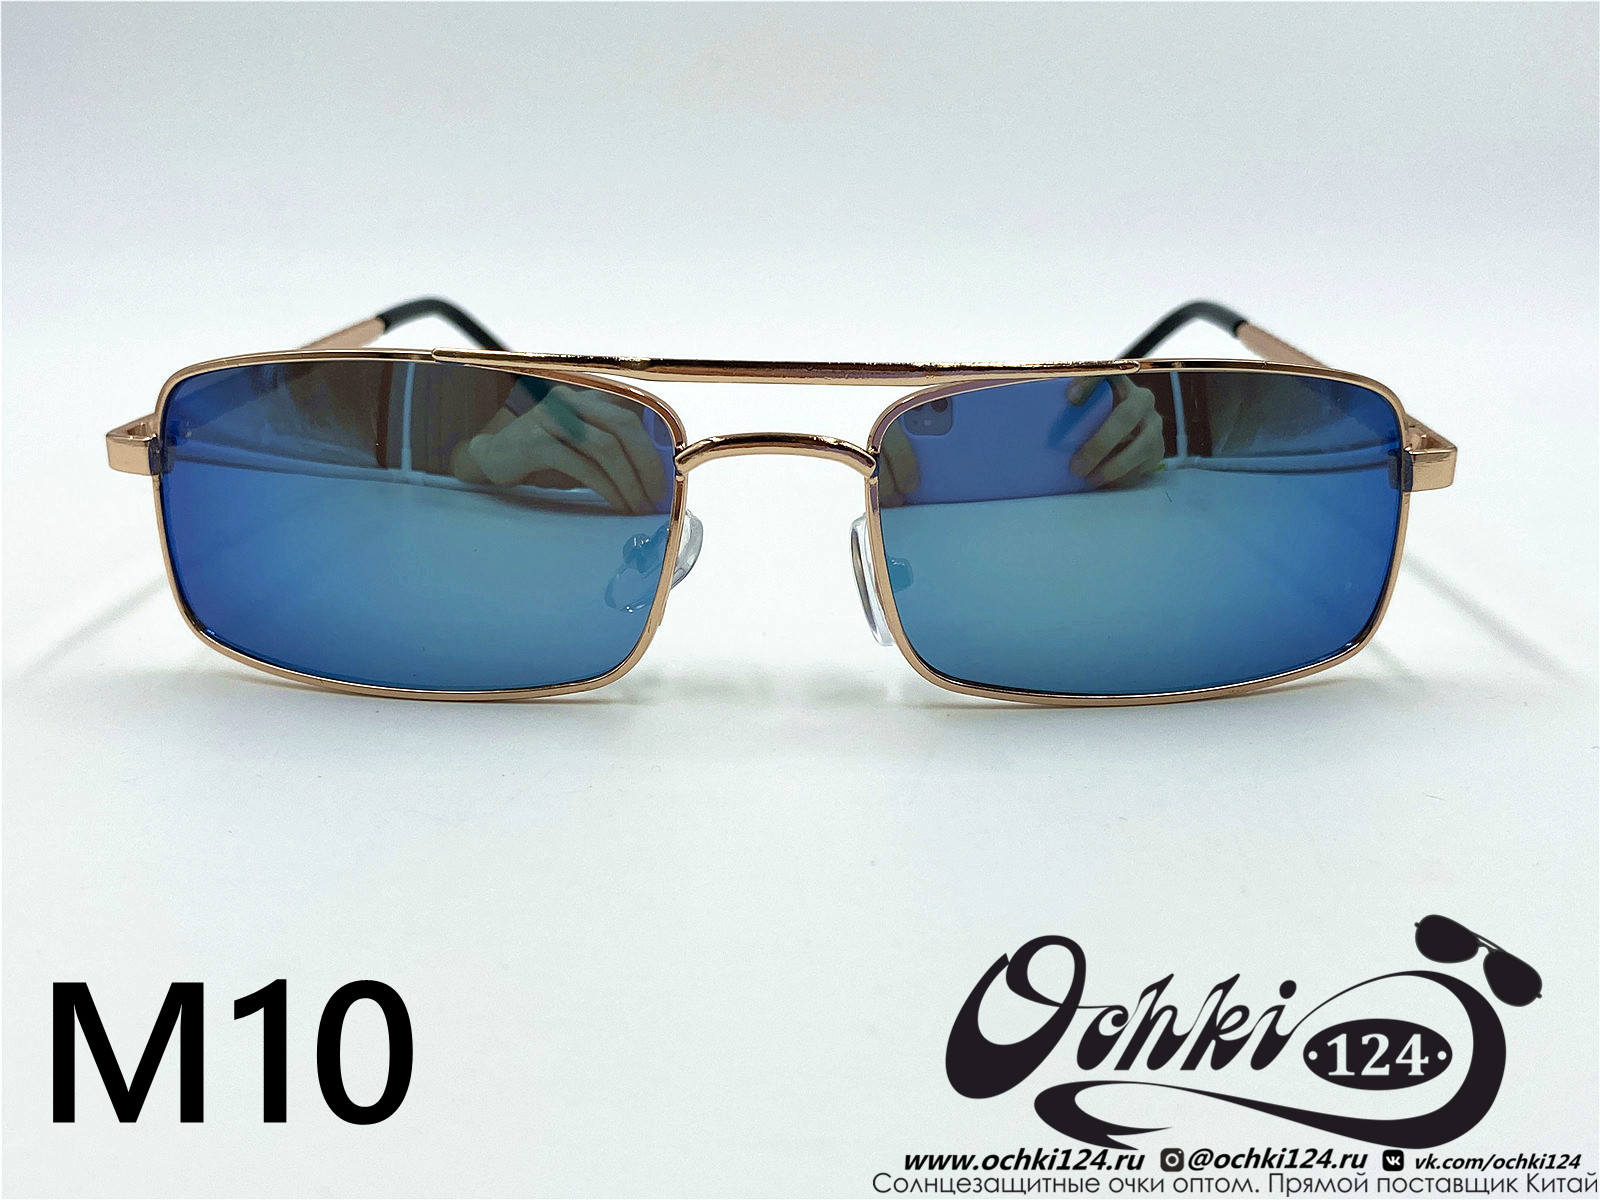  Солнцезащитные очки картинка 2022 Мужские Узкие и длинные KaiFeng M10-7 